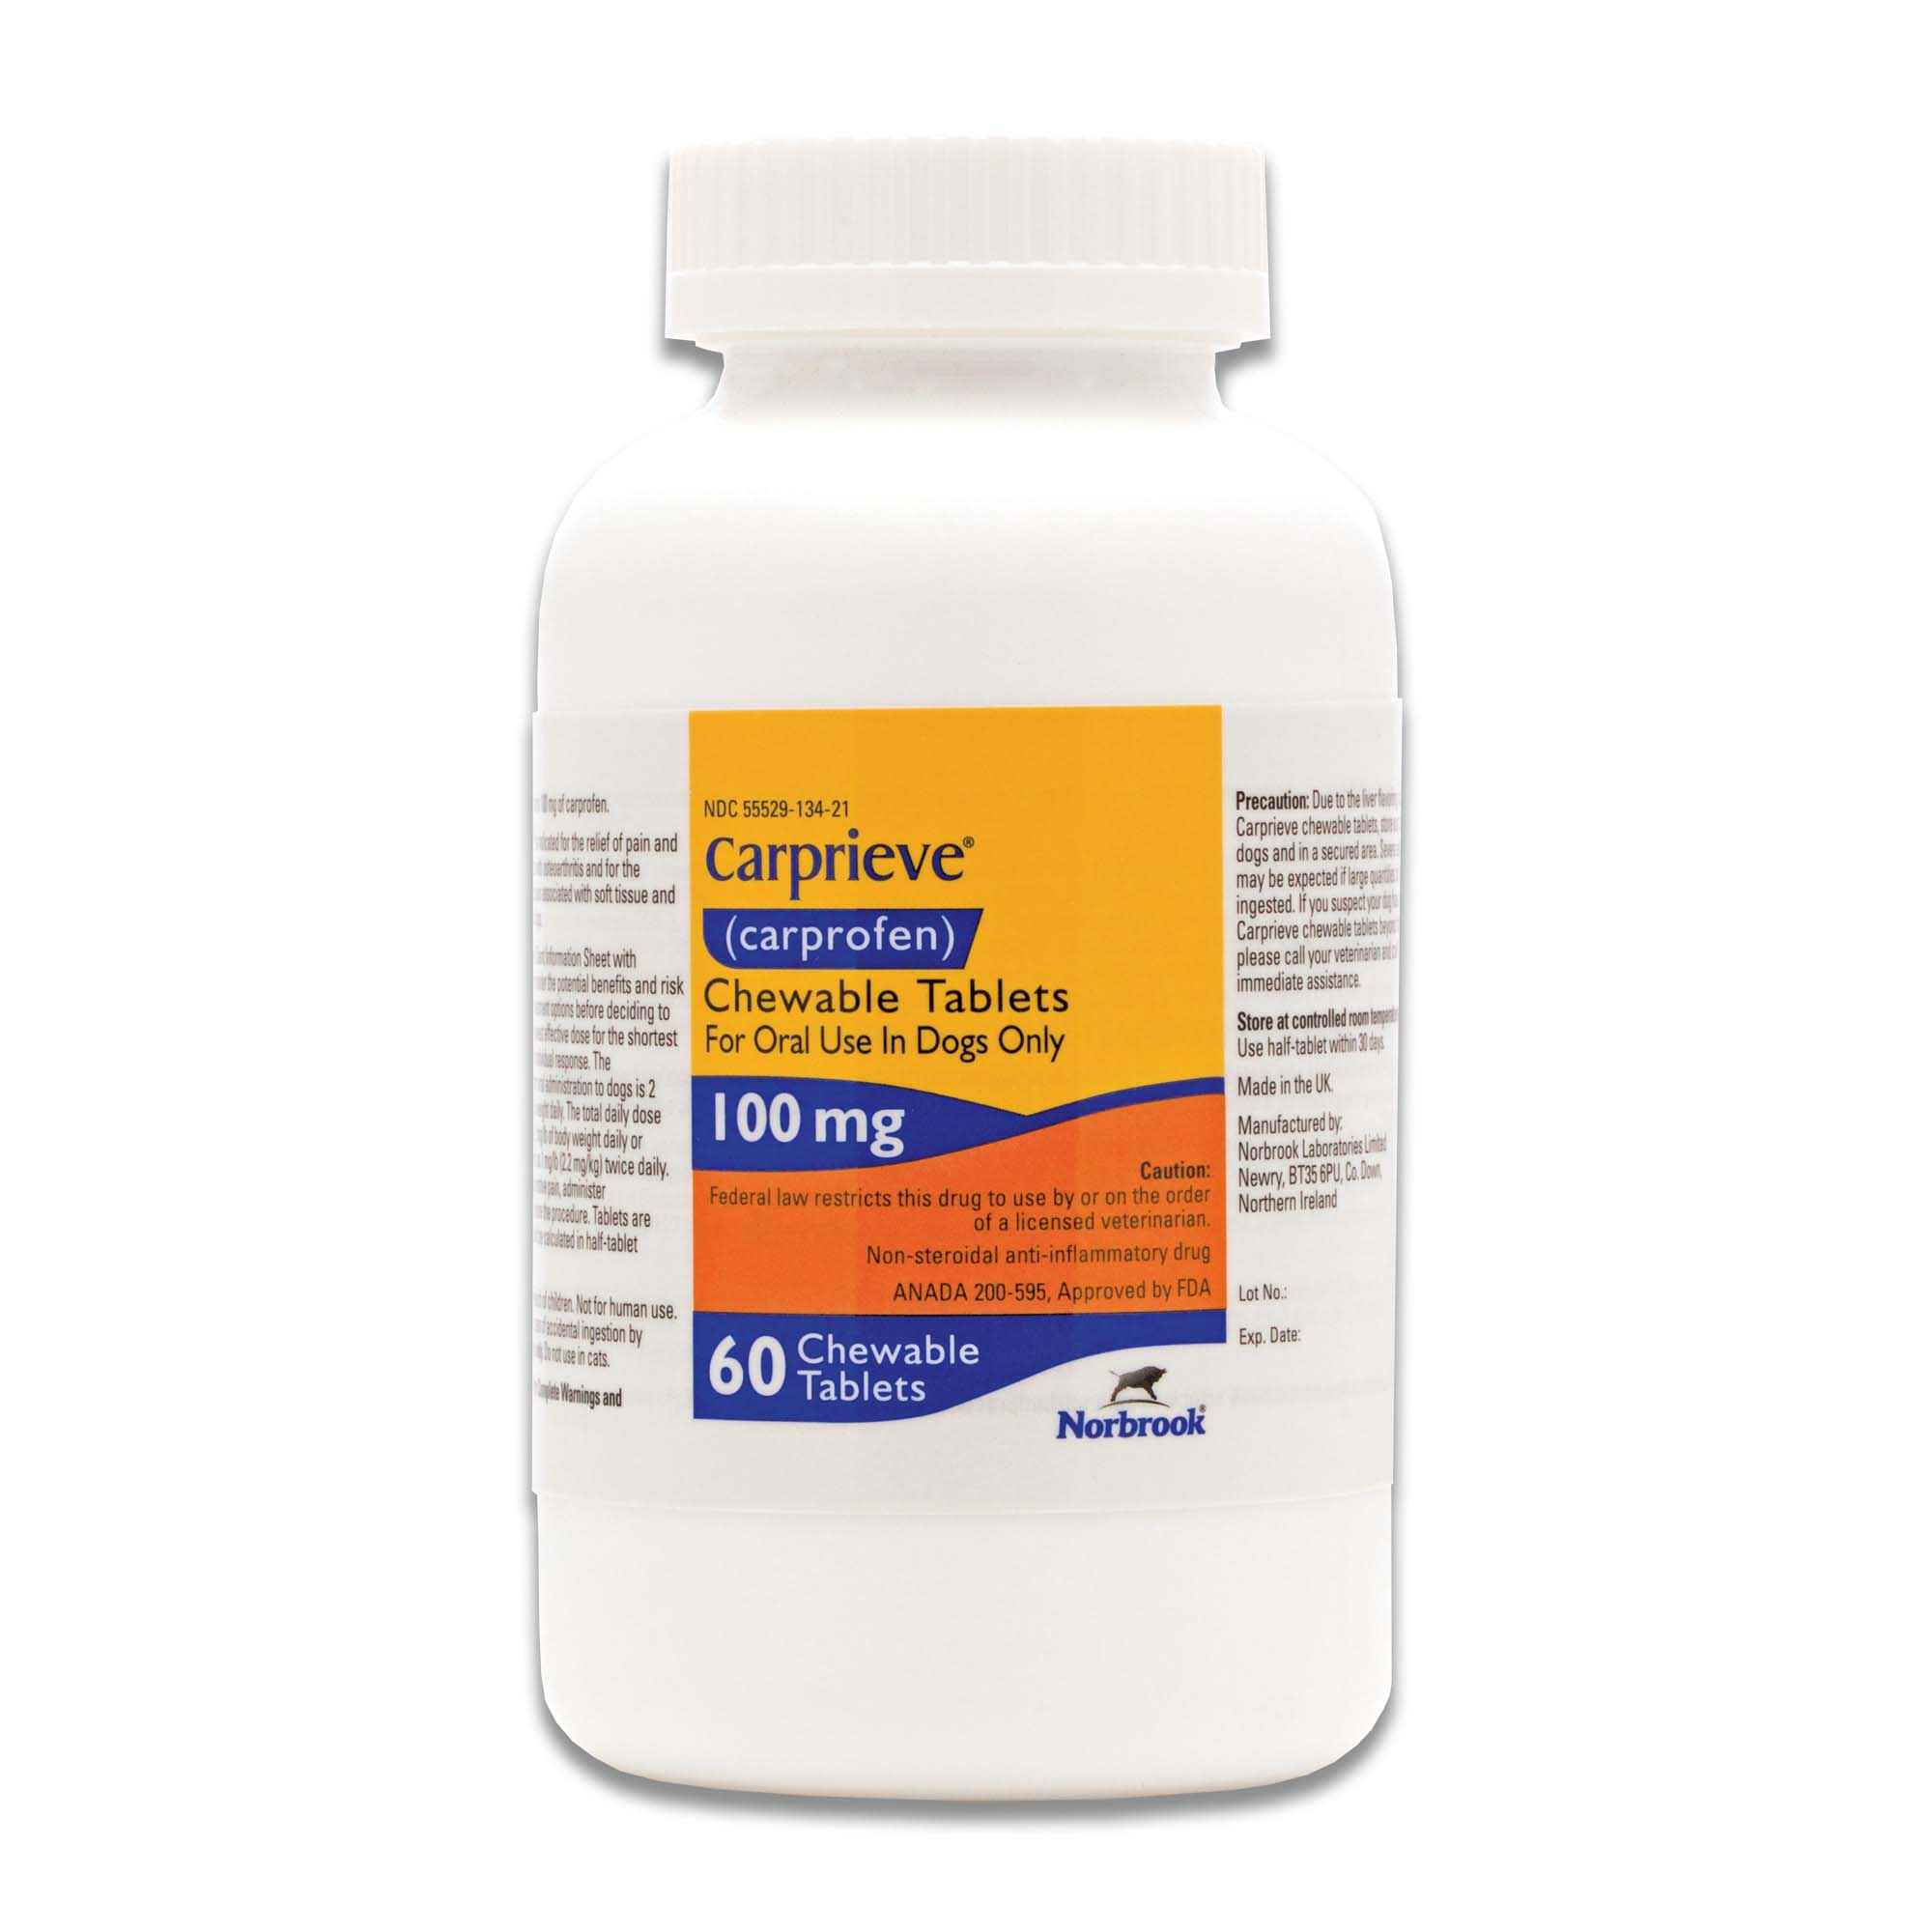 Carprovet (Carprofen) Chewable Tablets 100 mg, 60 Count | Petco